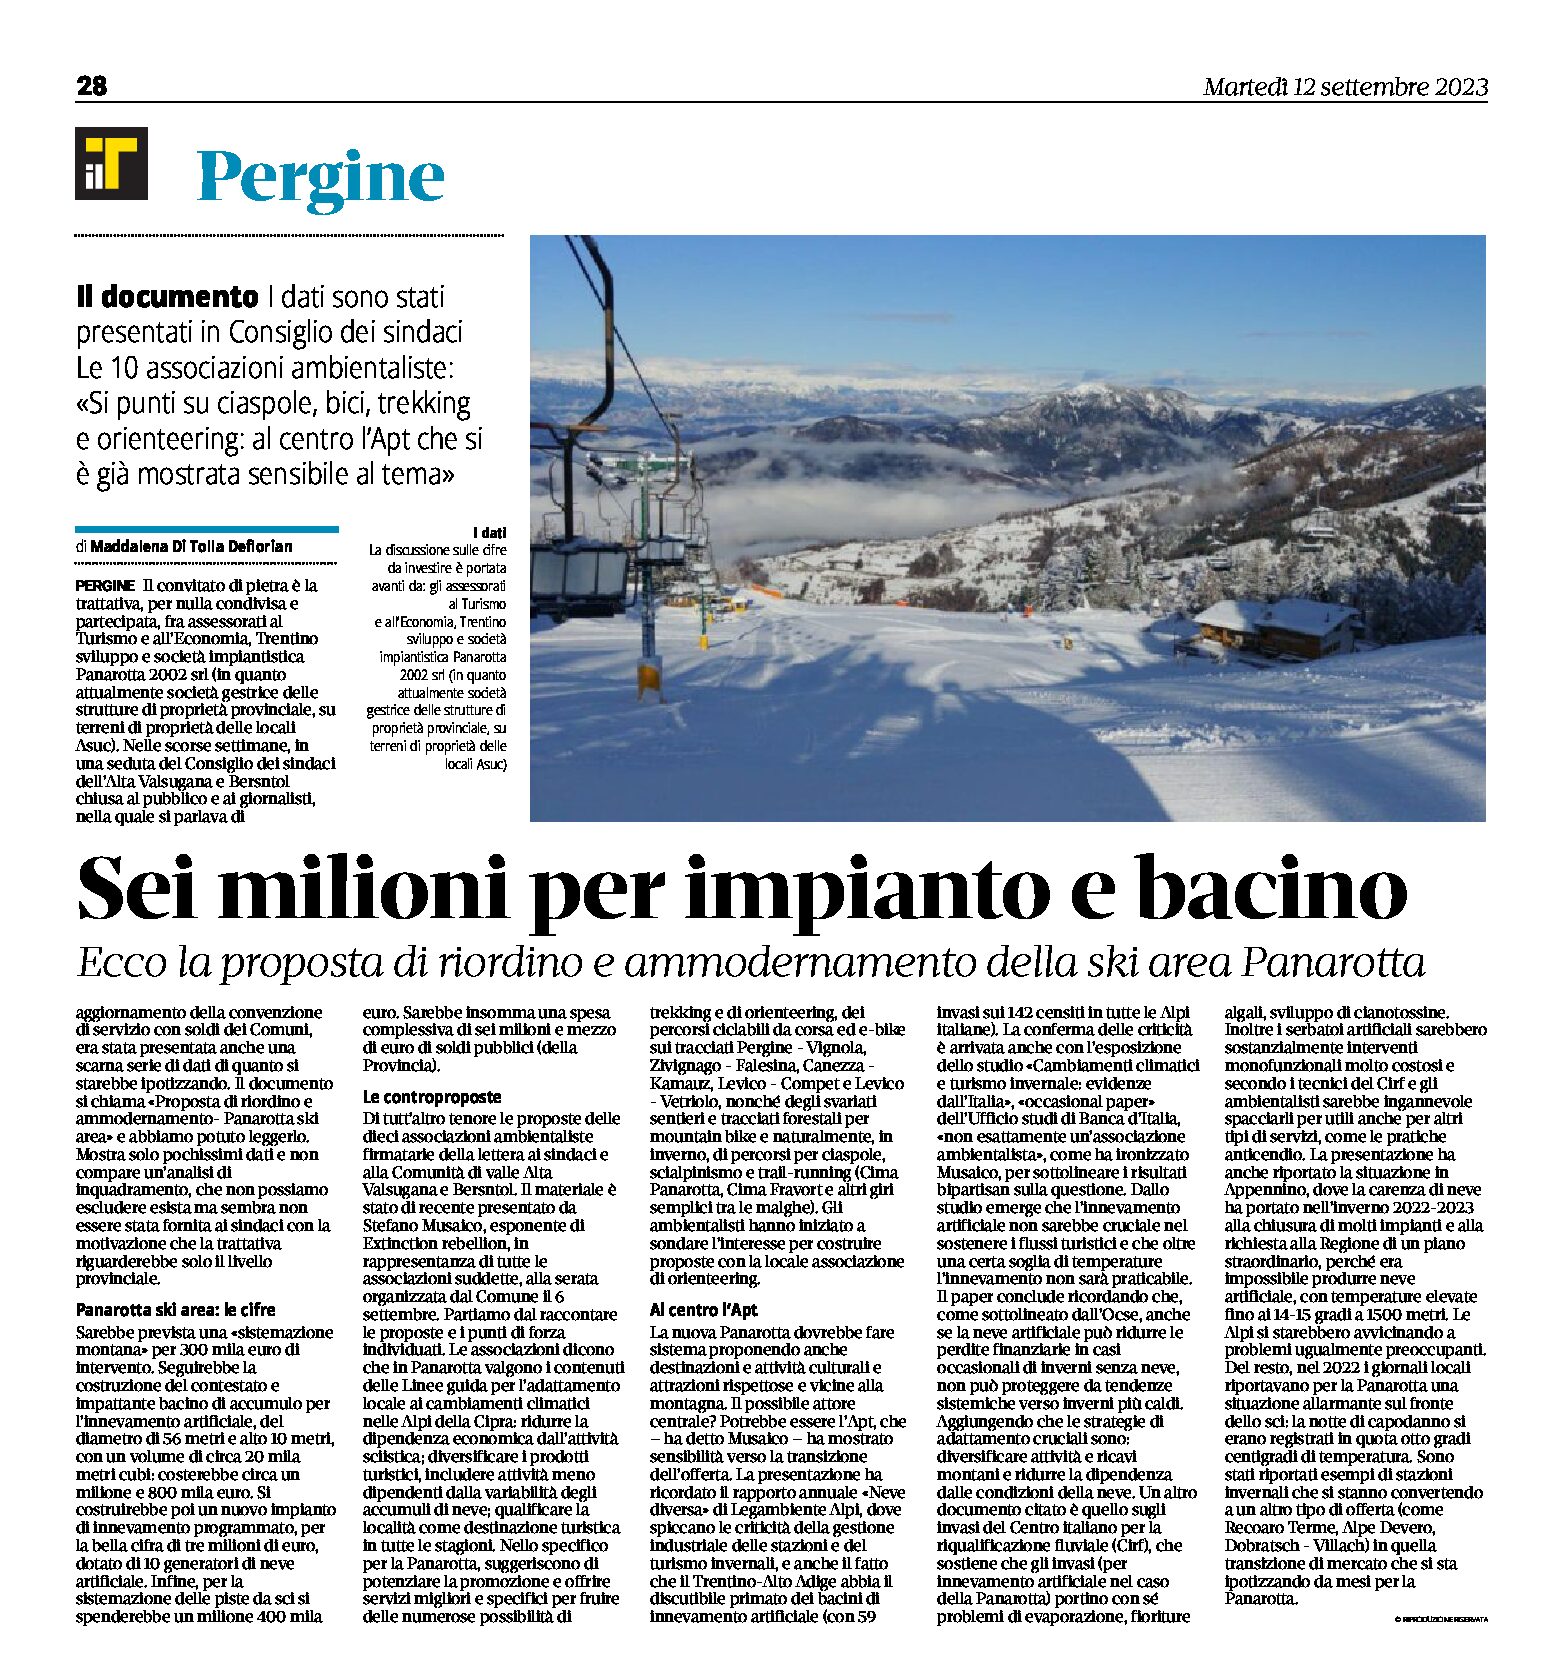 Ski area Panarotta: sei milioni per impianto e bacino